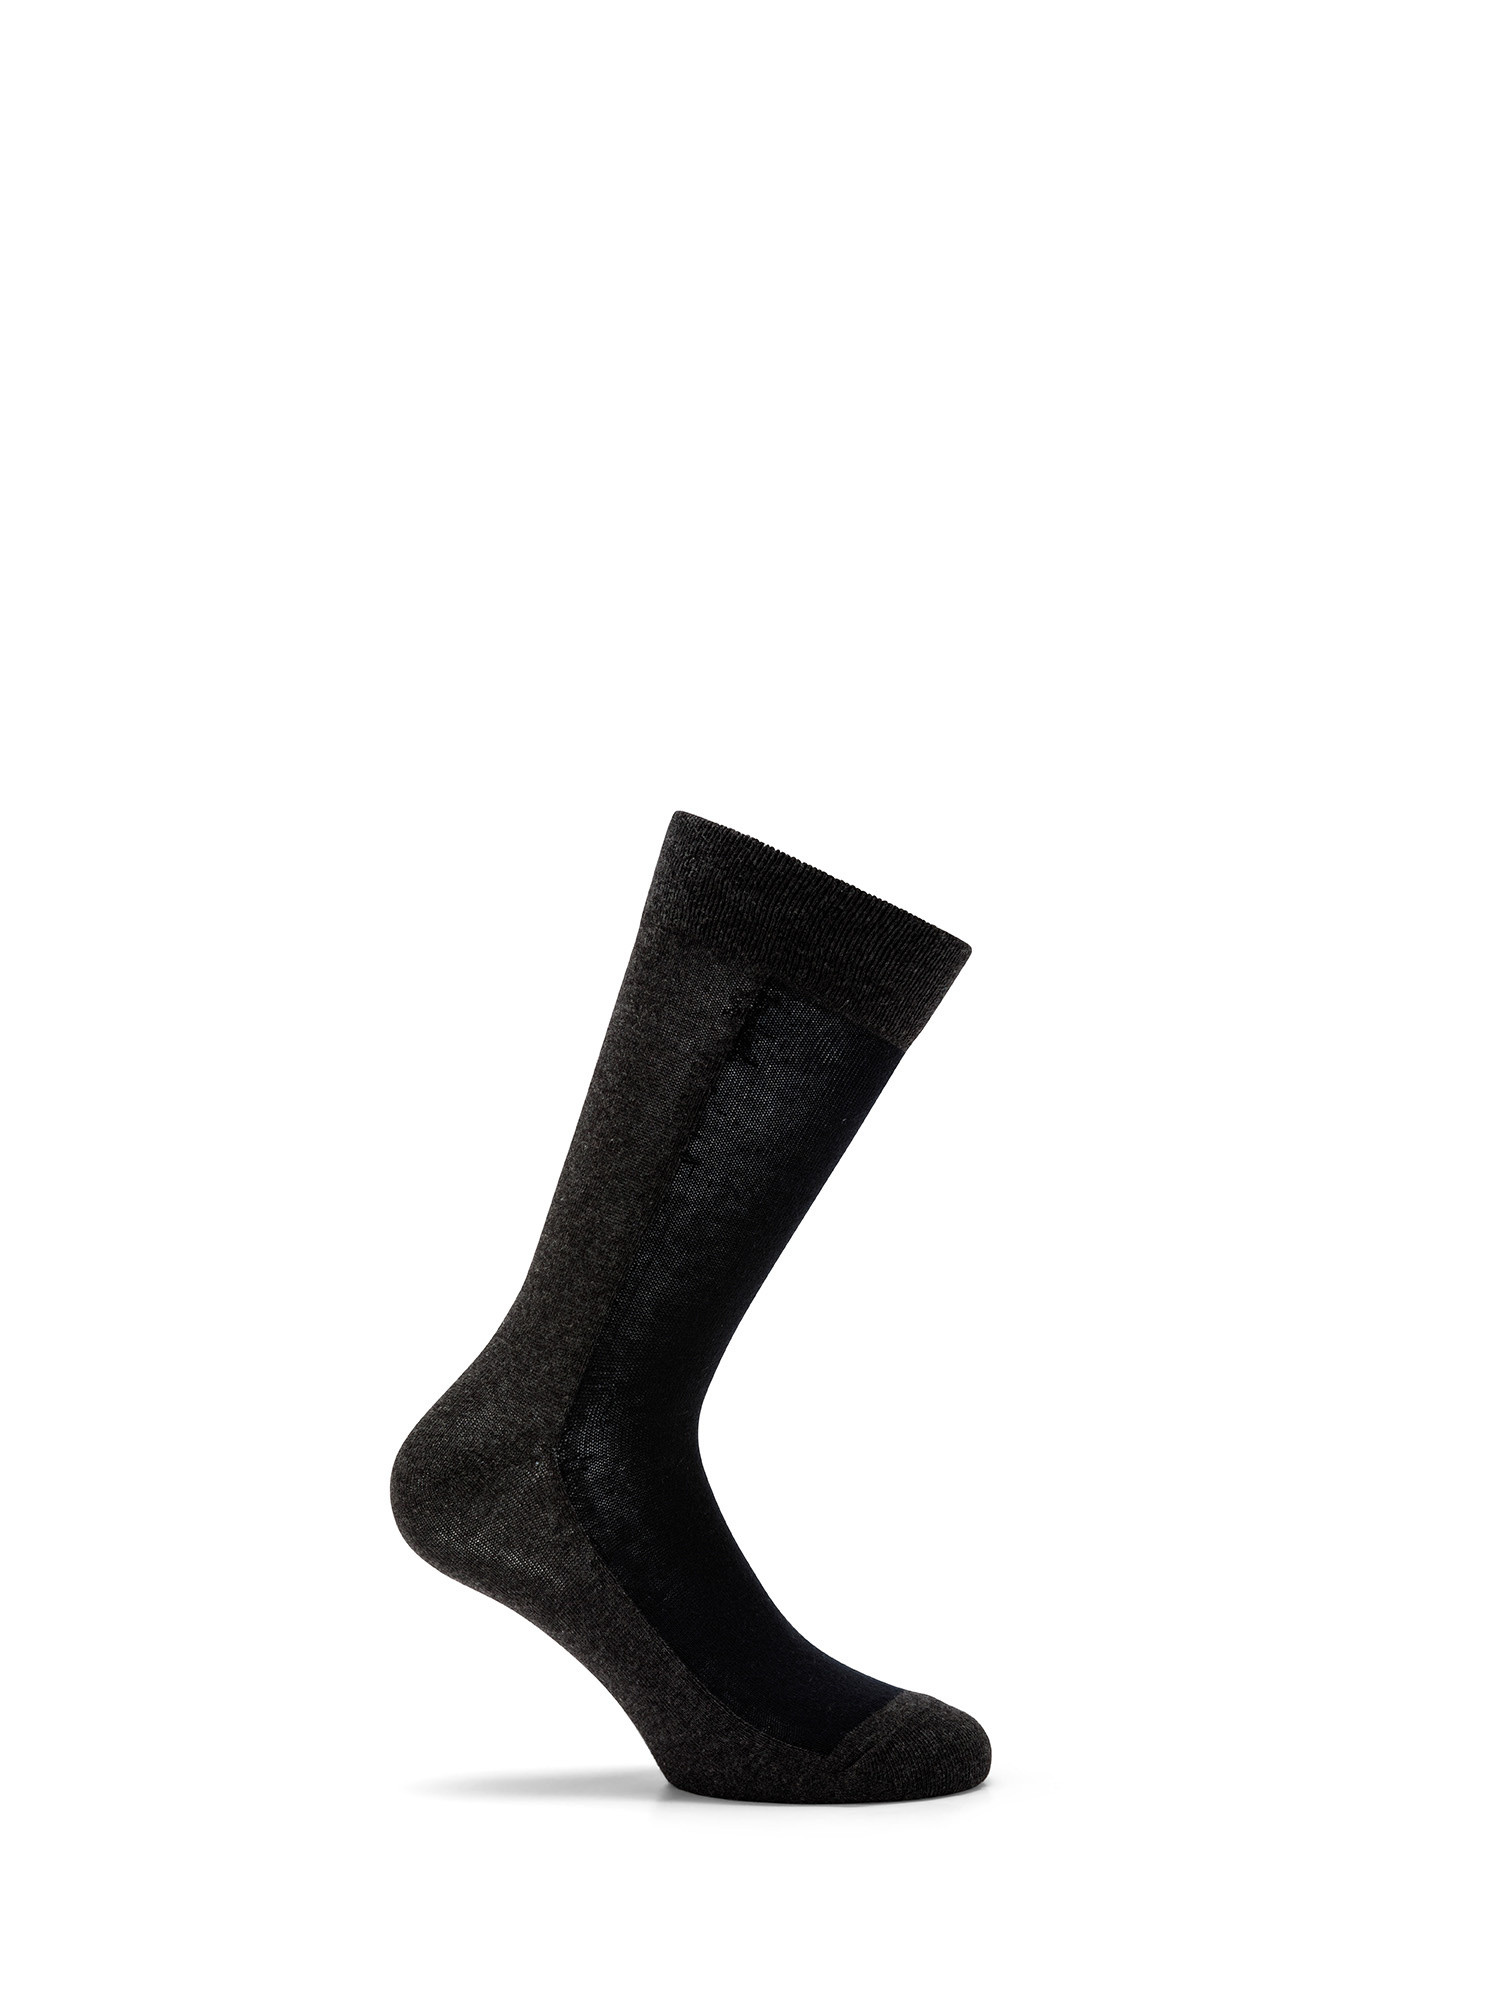 Luca D'Altieri - Set of 3 patterned short socks, Grey, large image number 2